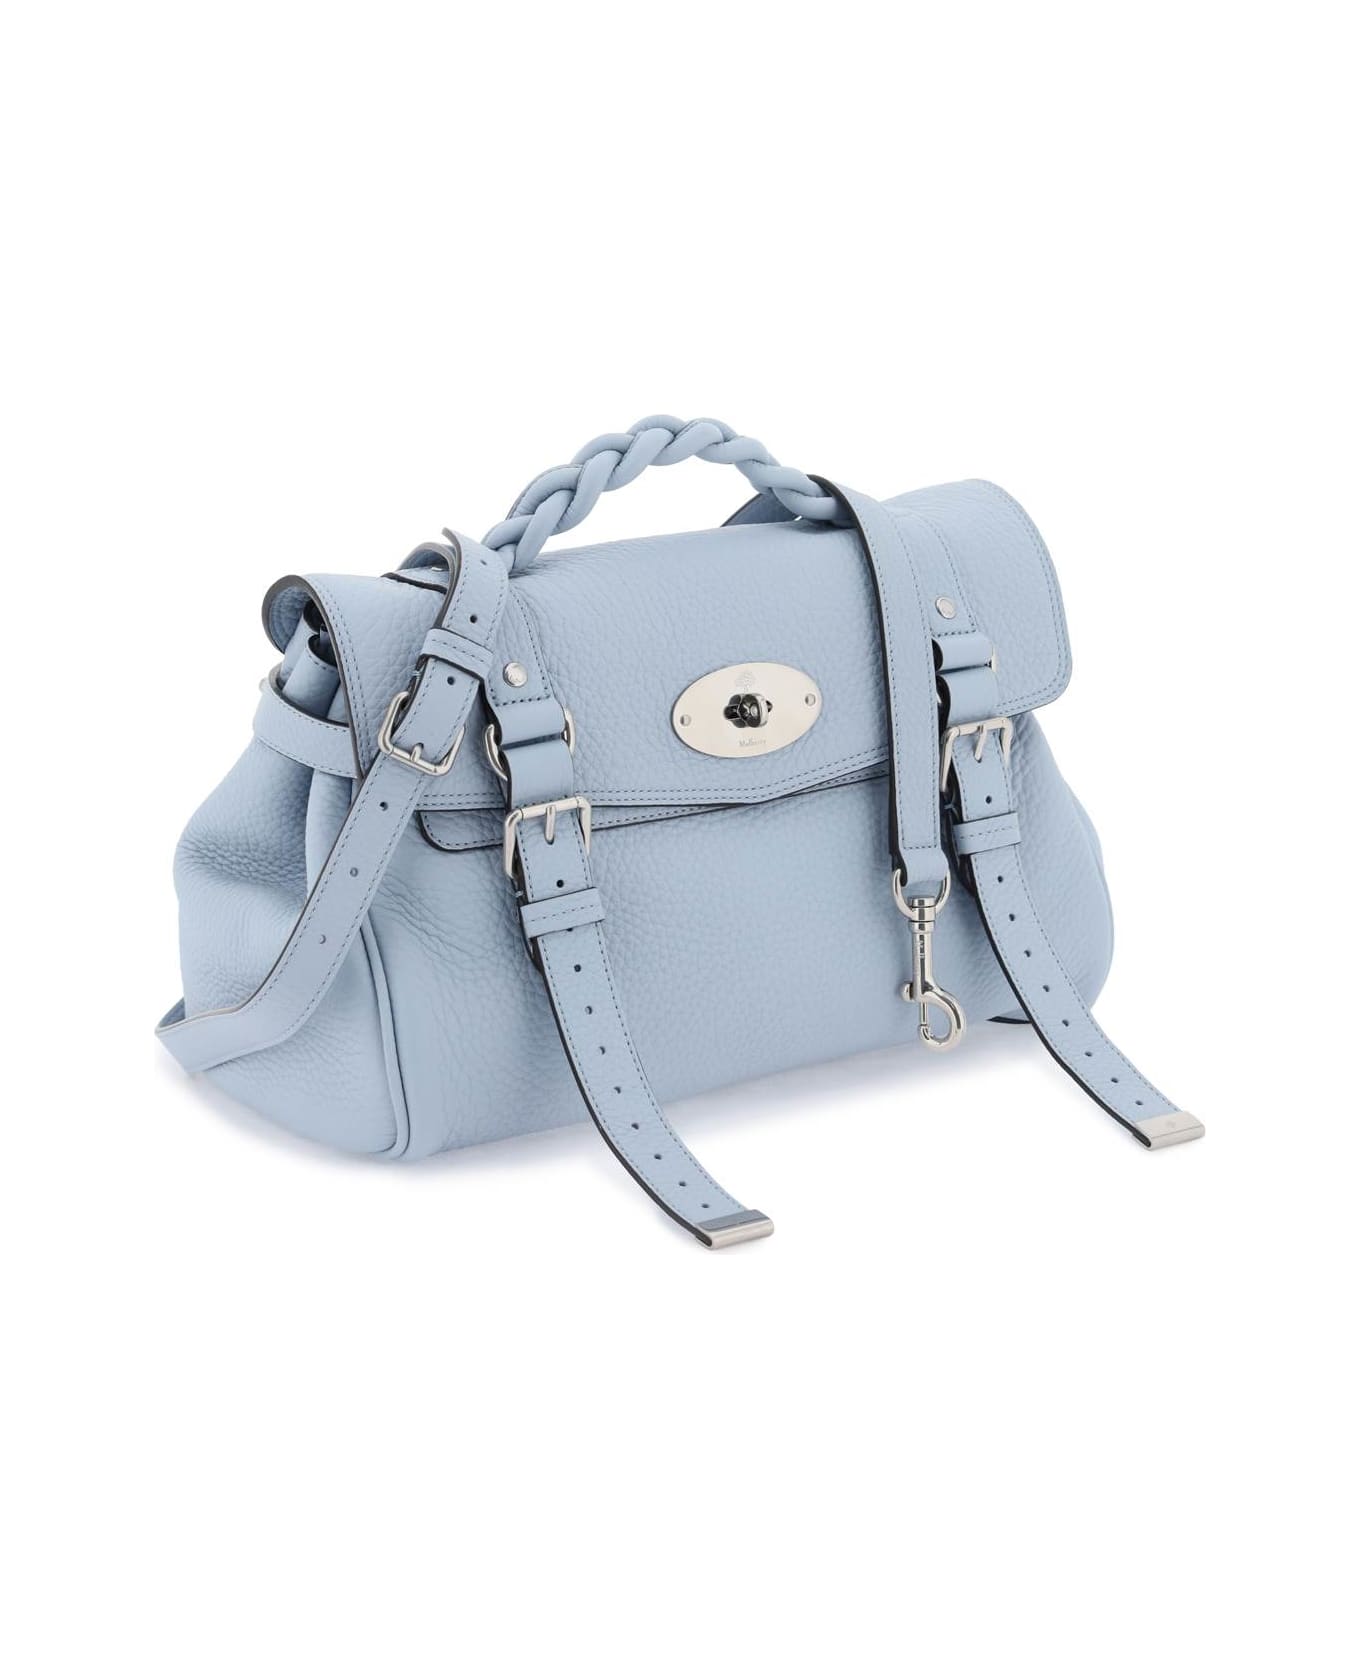 Mulberry Alexa Medium Handbag - POPLIN BLUE (Light blue)